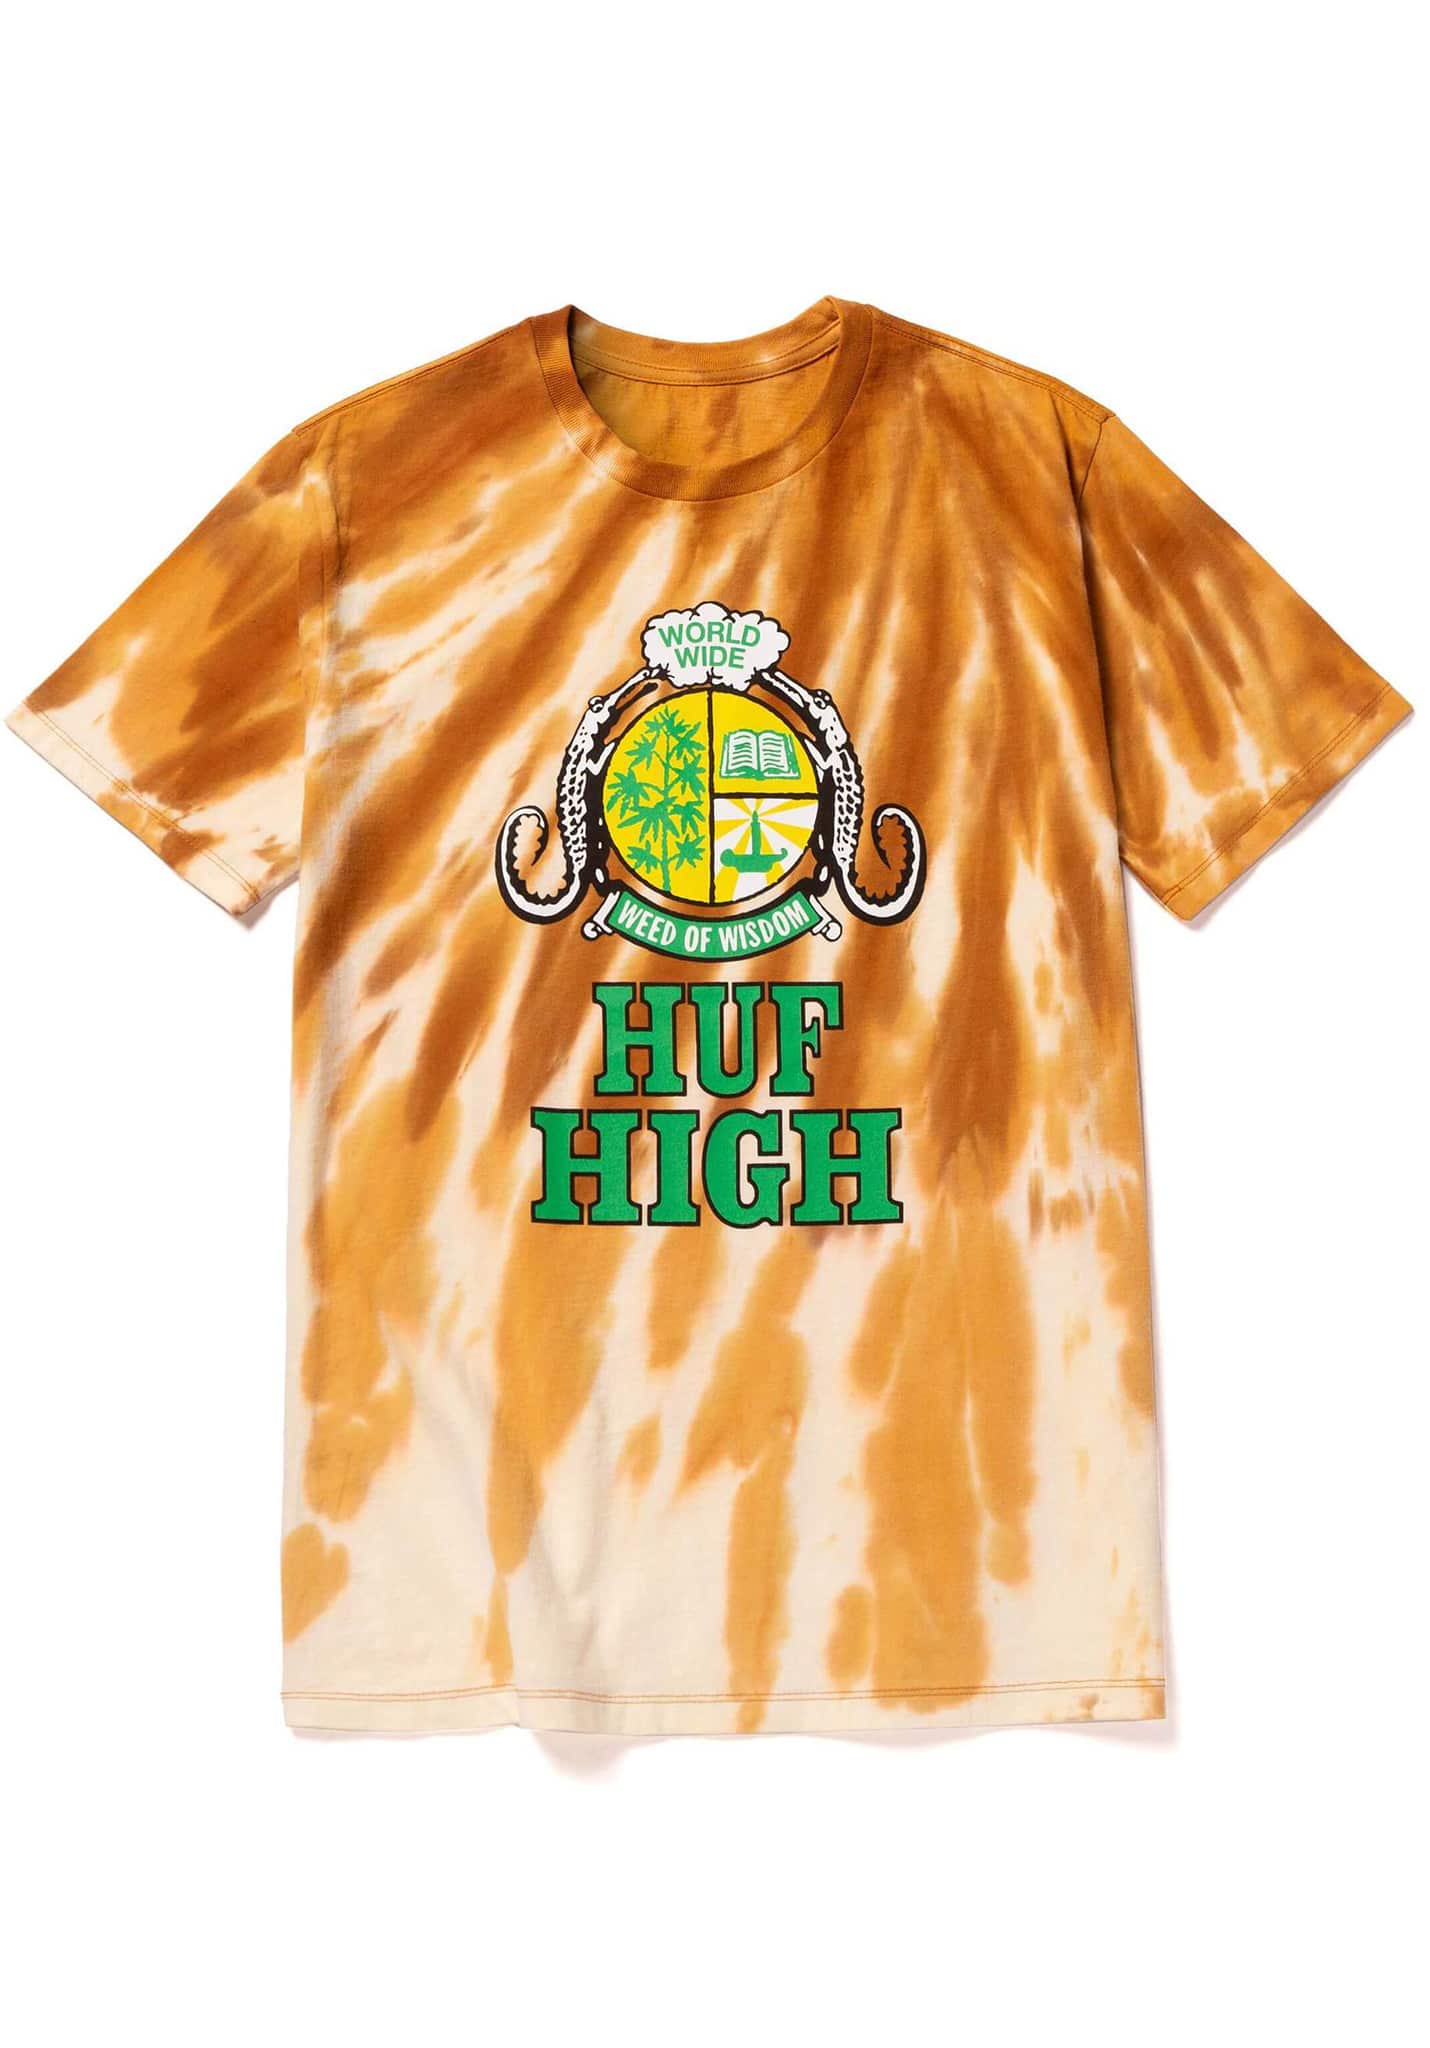 HUF Huf High T-Shirt gold L